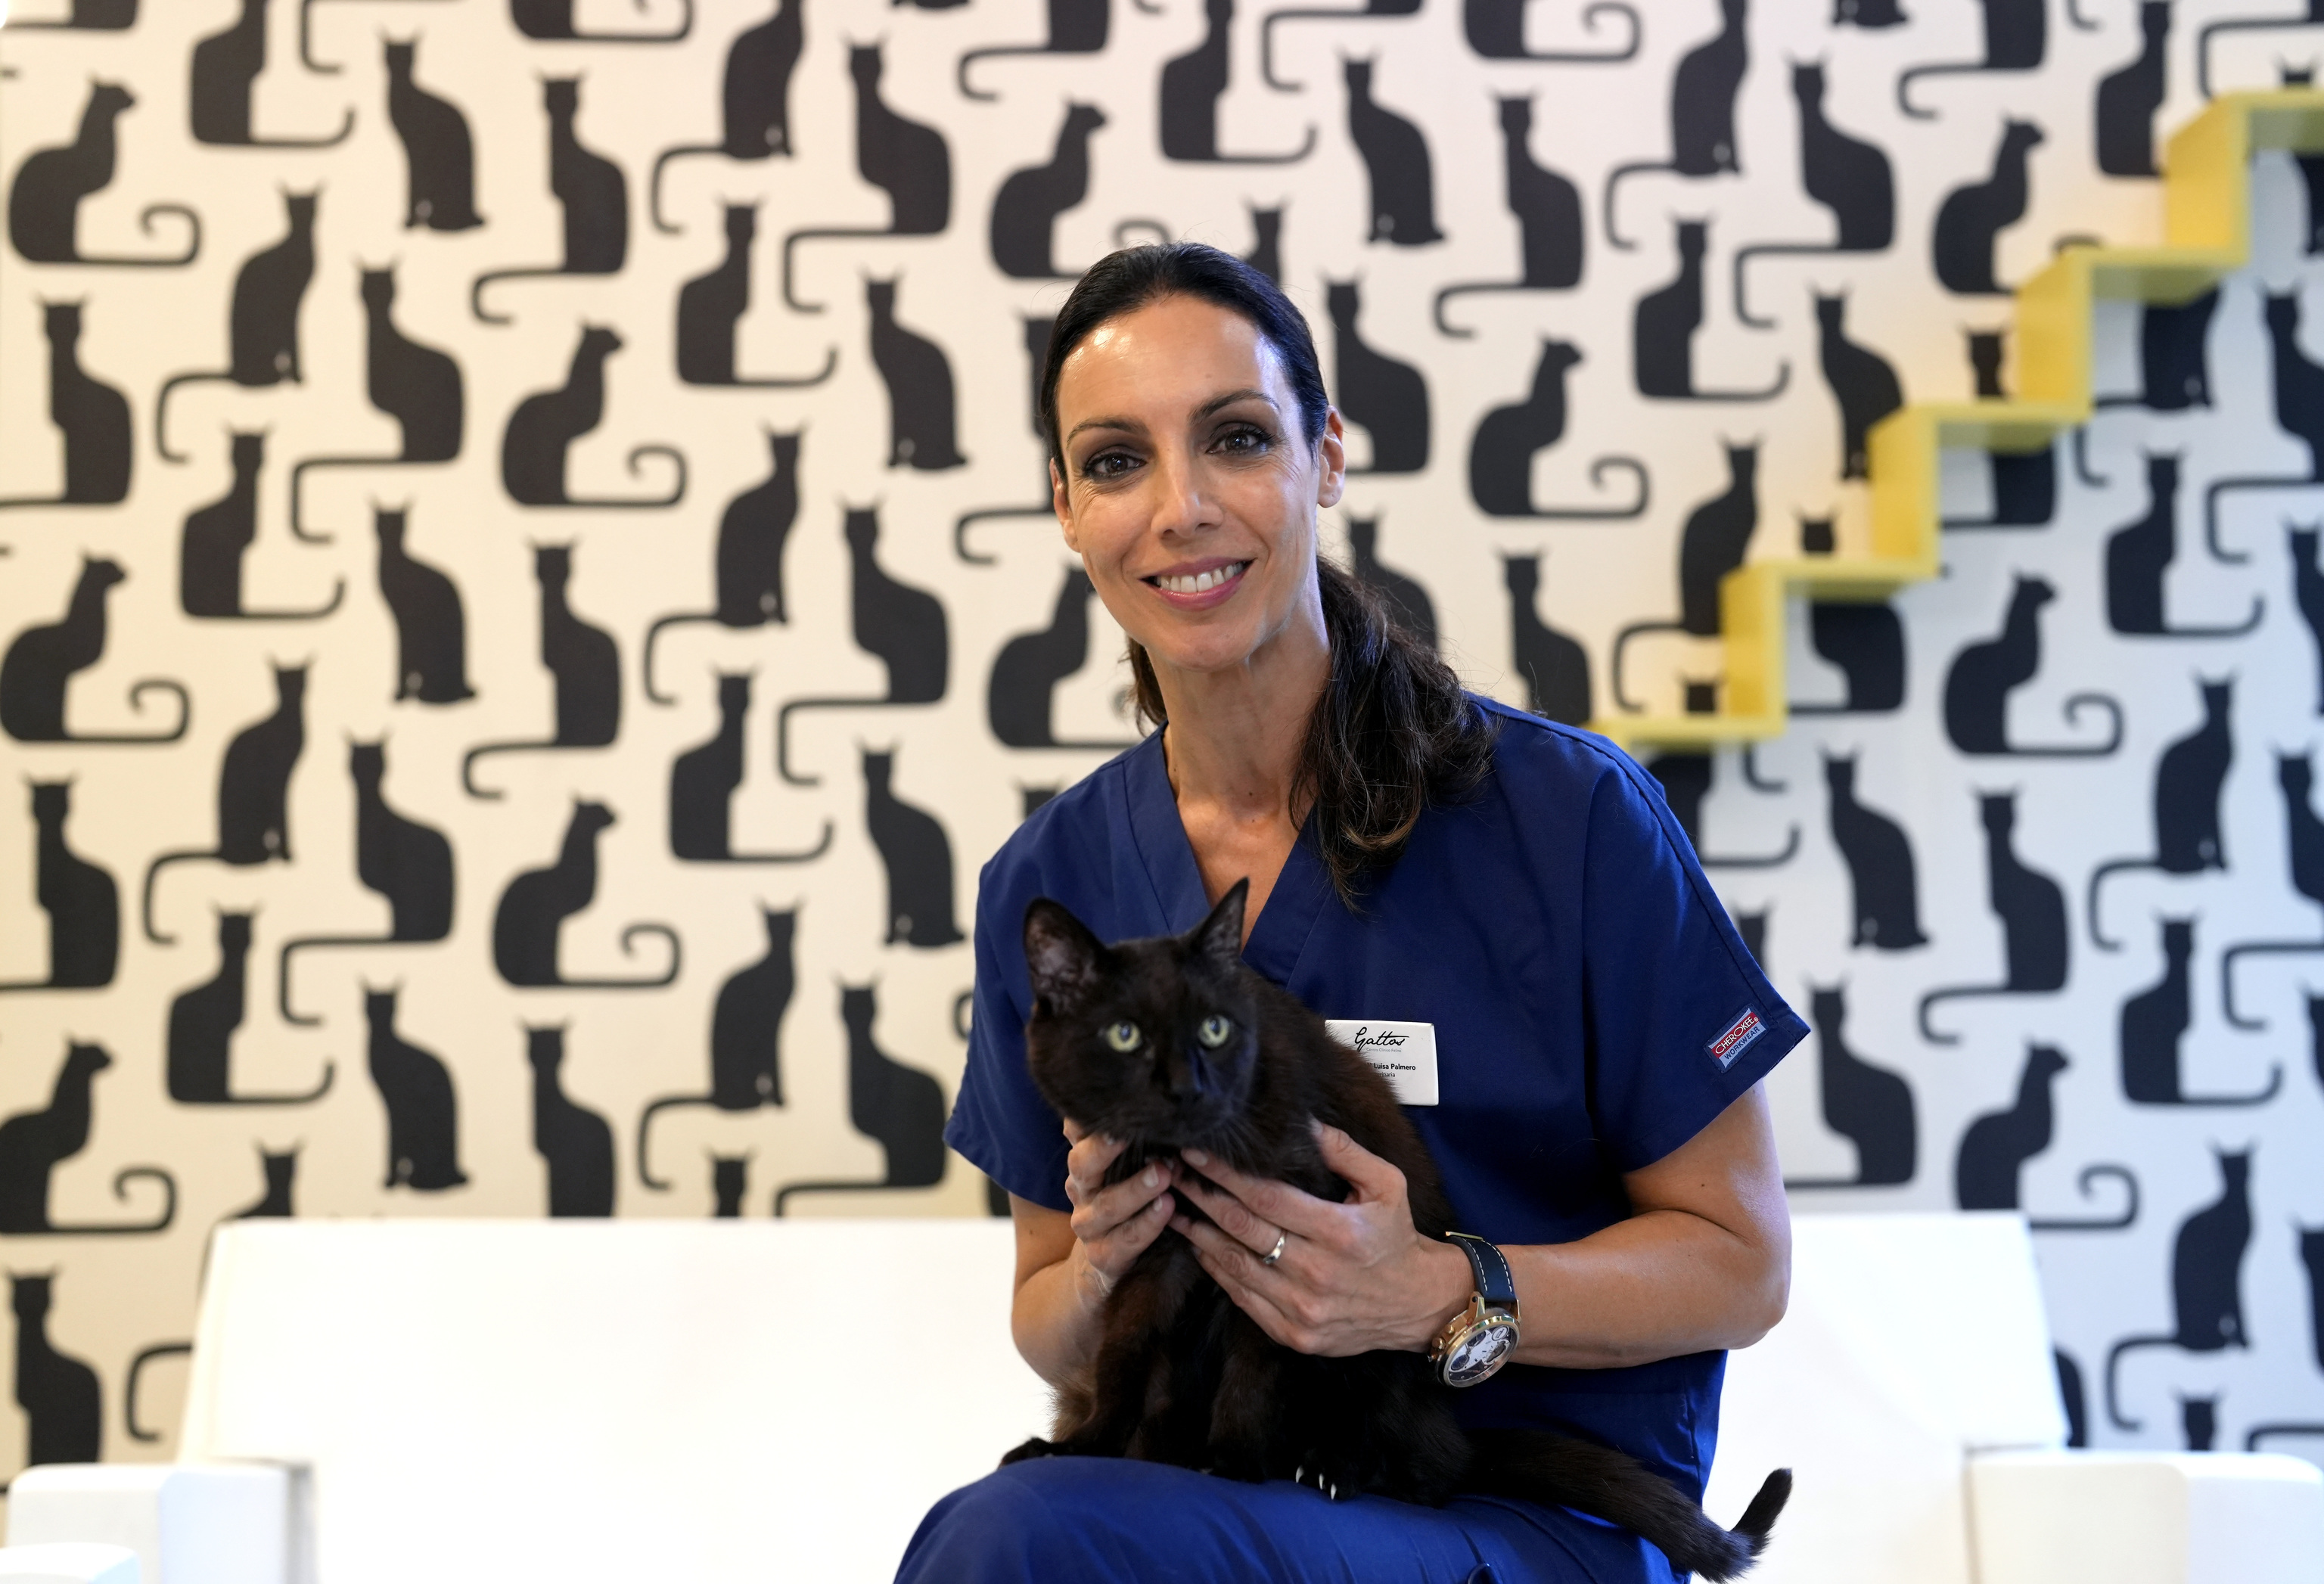 La veterinaria que hospital para felinos más grande de España: "Los gatos muy macarras" | Madrid